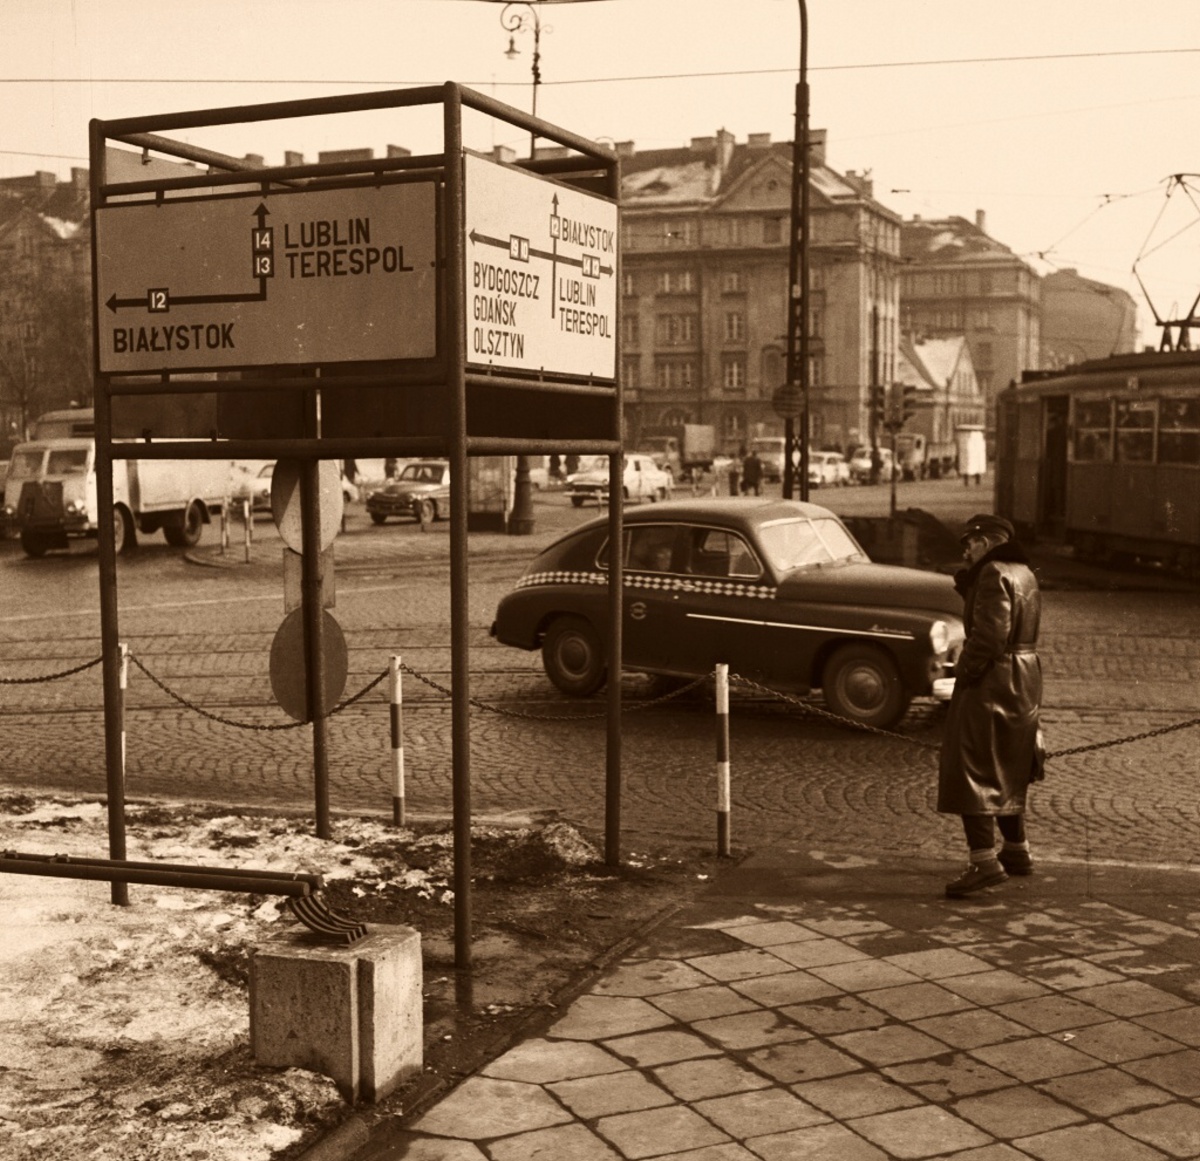 WagonN+ND 
Na Pradze.

Foto: Zbyszko Siemaszko.
Zdjęcie jest własnością NAC.
Wszelkie prawa zastrzeżone.

Słowa kluczowe: WagonN+ND 21 TargowaŚwierczewskiego 1964